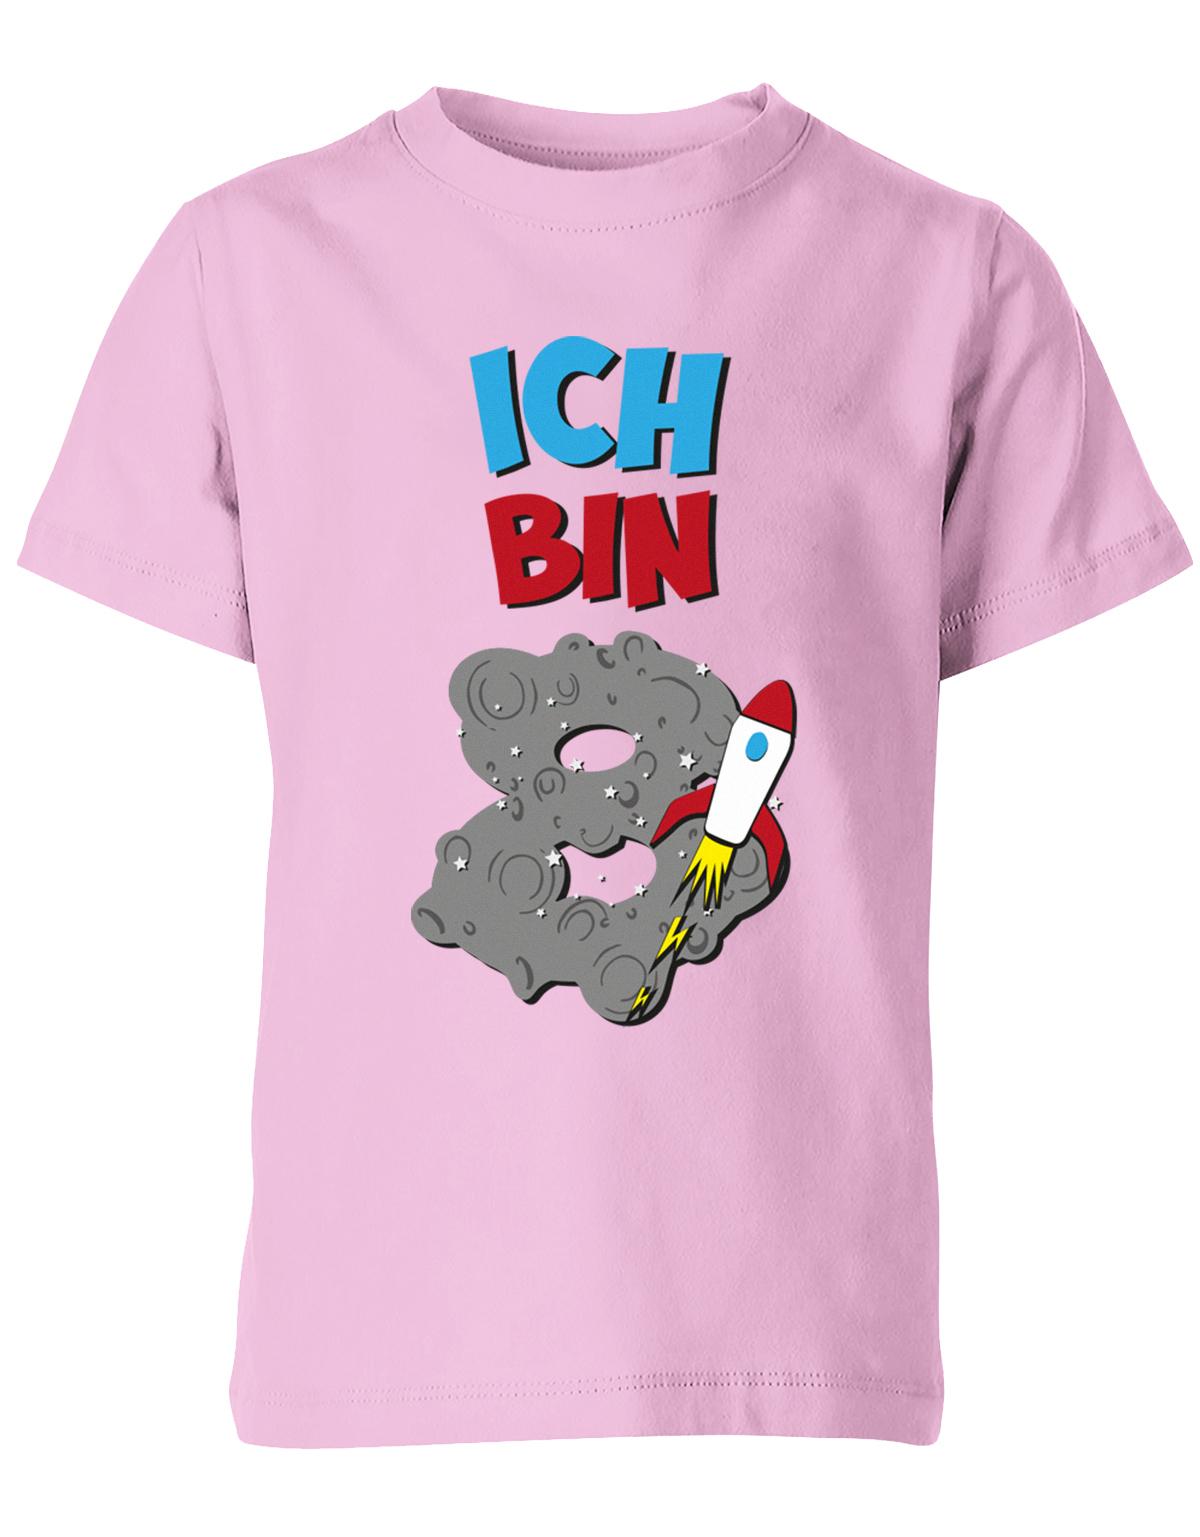 ich-bin-8-weltraum-rakete-planet-geburtstag-kinder-shirt-rosa